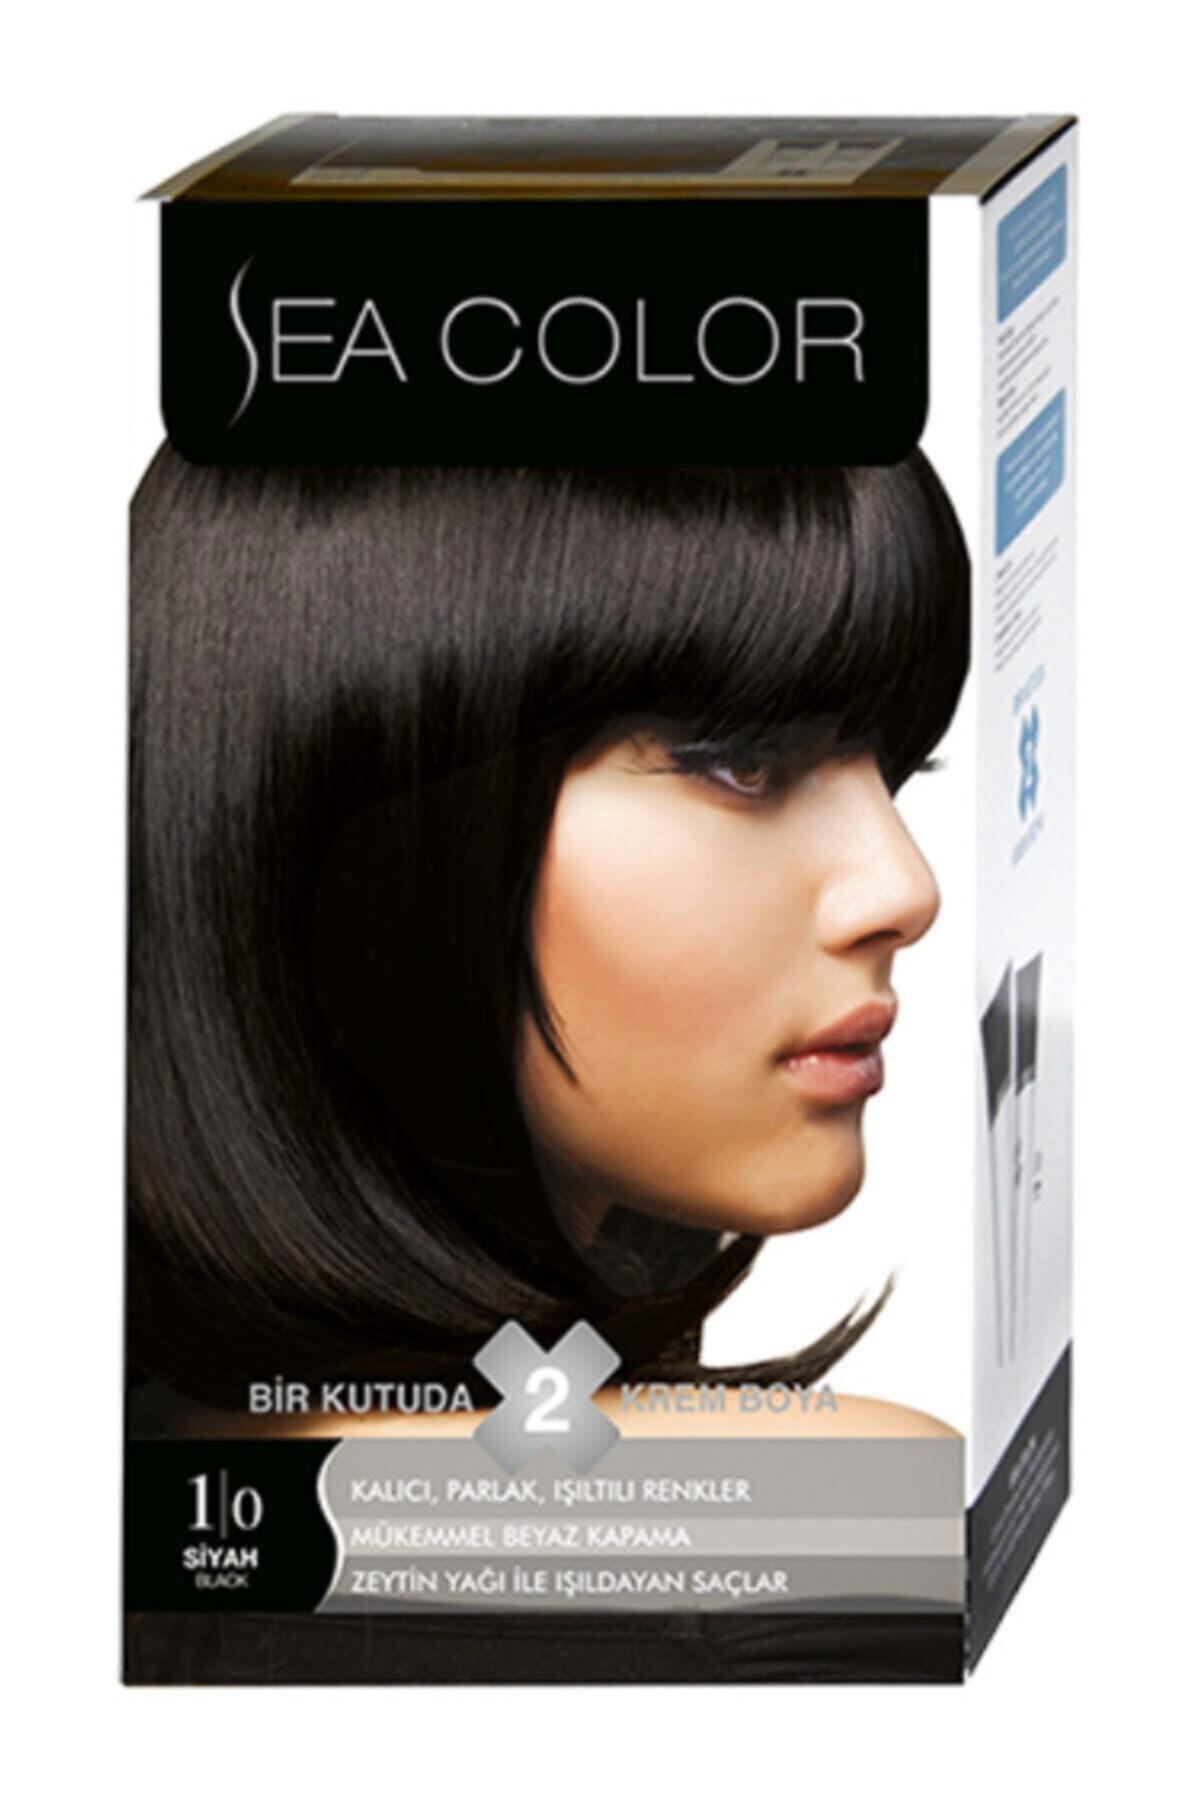 Sea Color 1.0 Siyah Krem Saç Boyası 2x50 ml